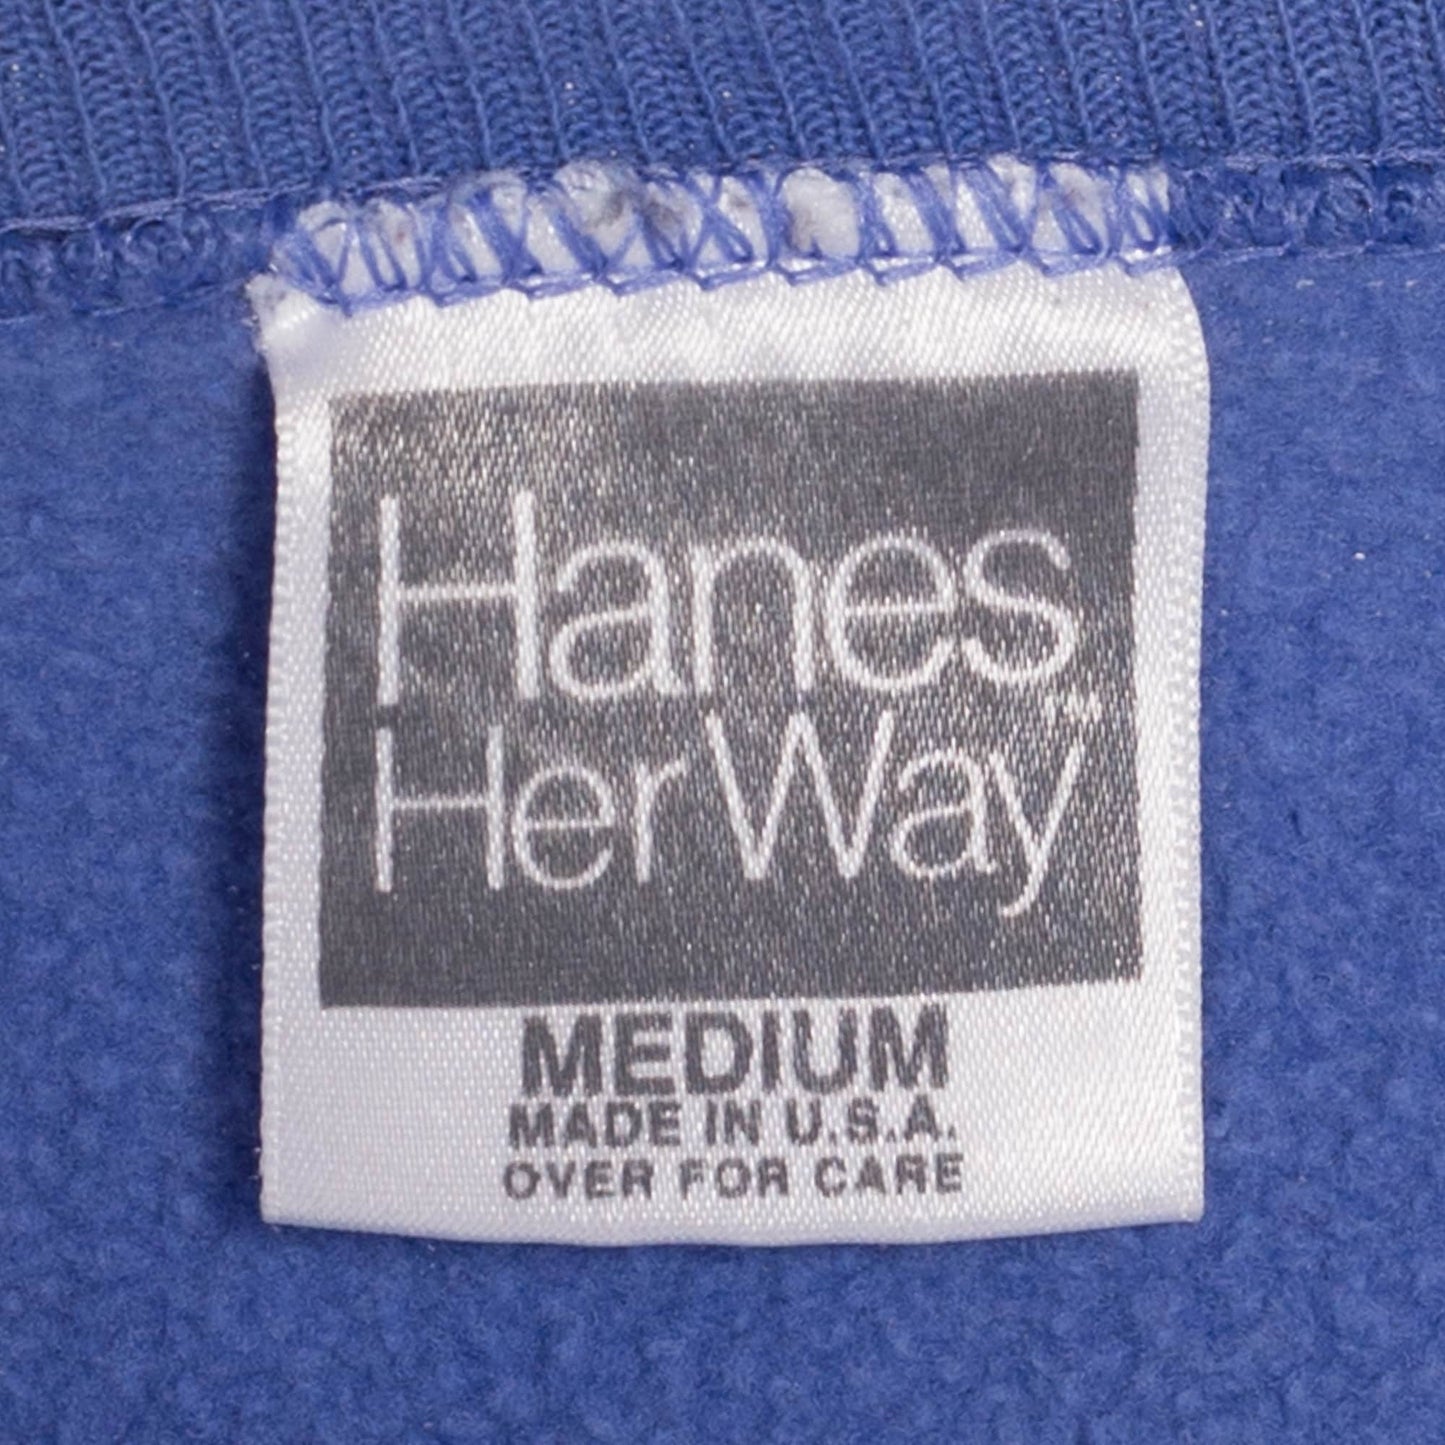 90s Periwinkle Raglan Sleeve Sweatshirt - Medium | Vintage Blank Plain Slouchy Crew Neck Pullover